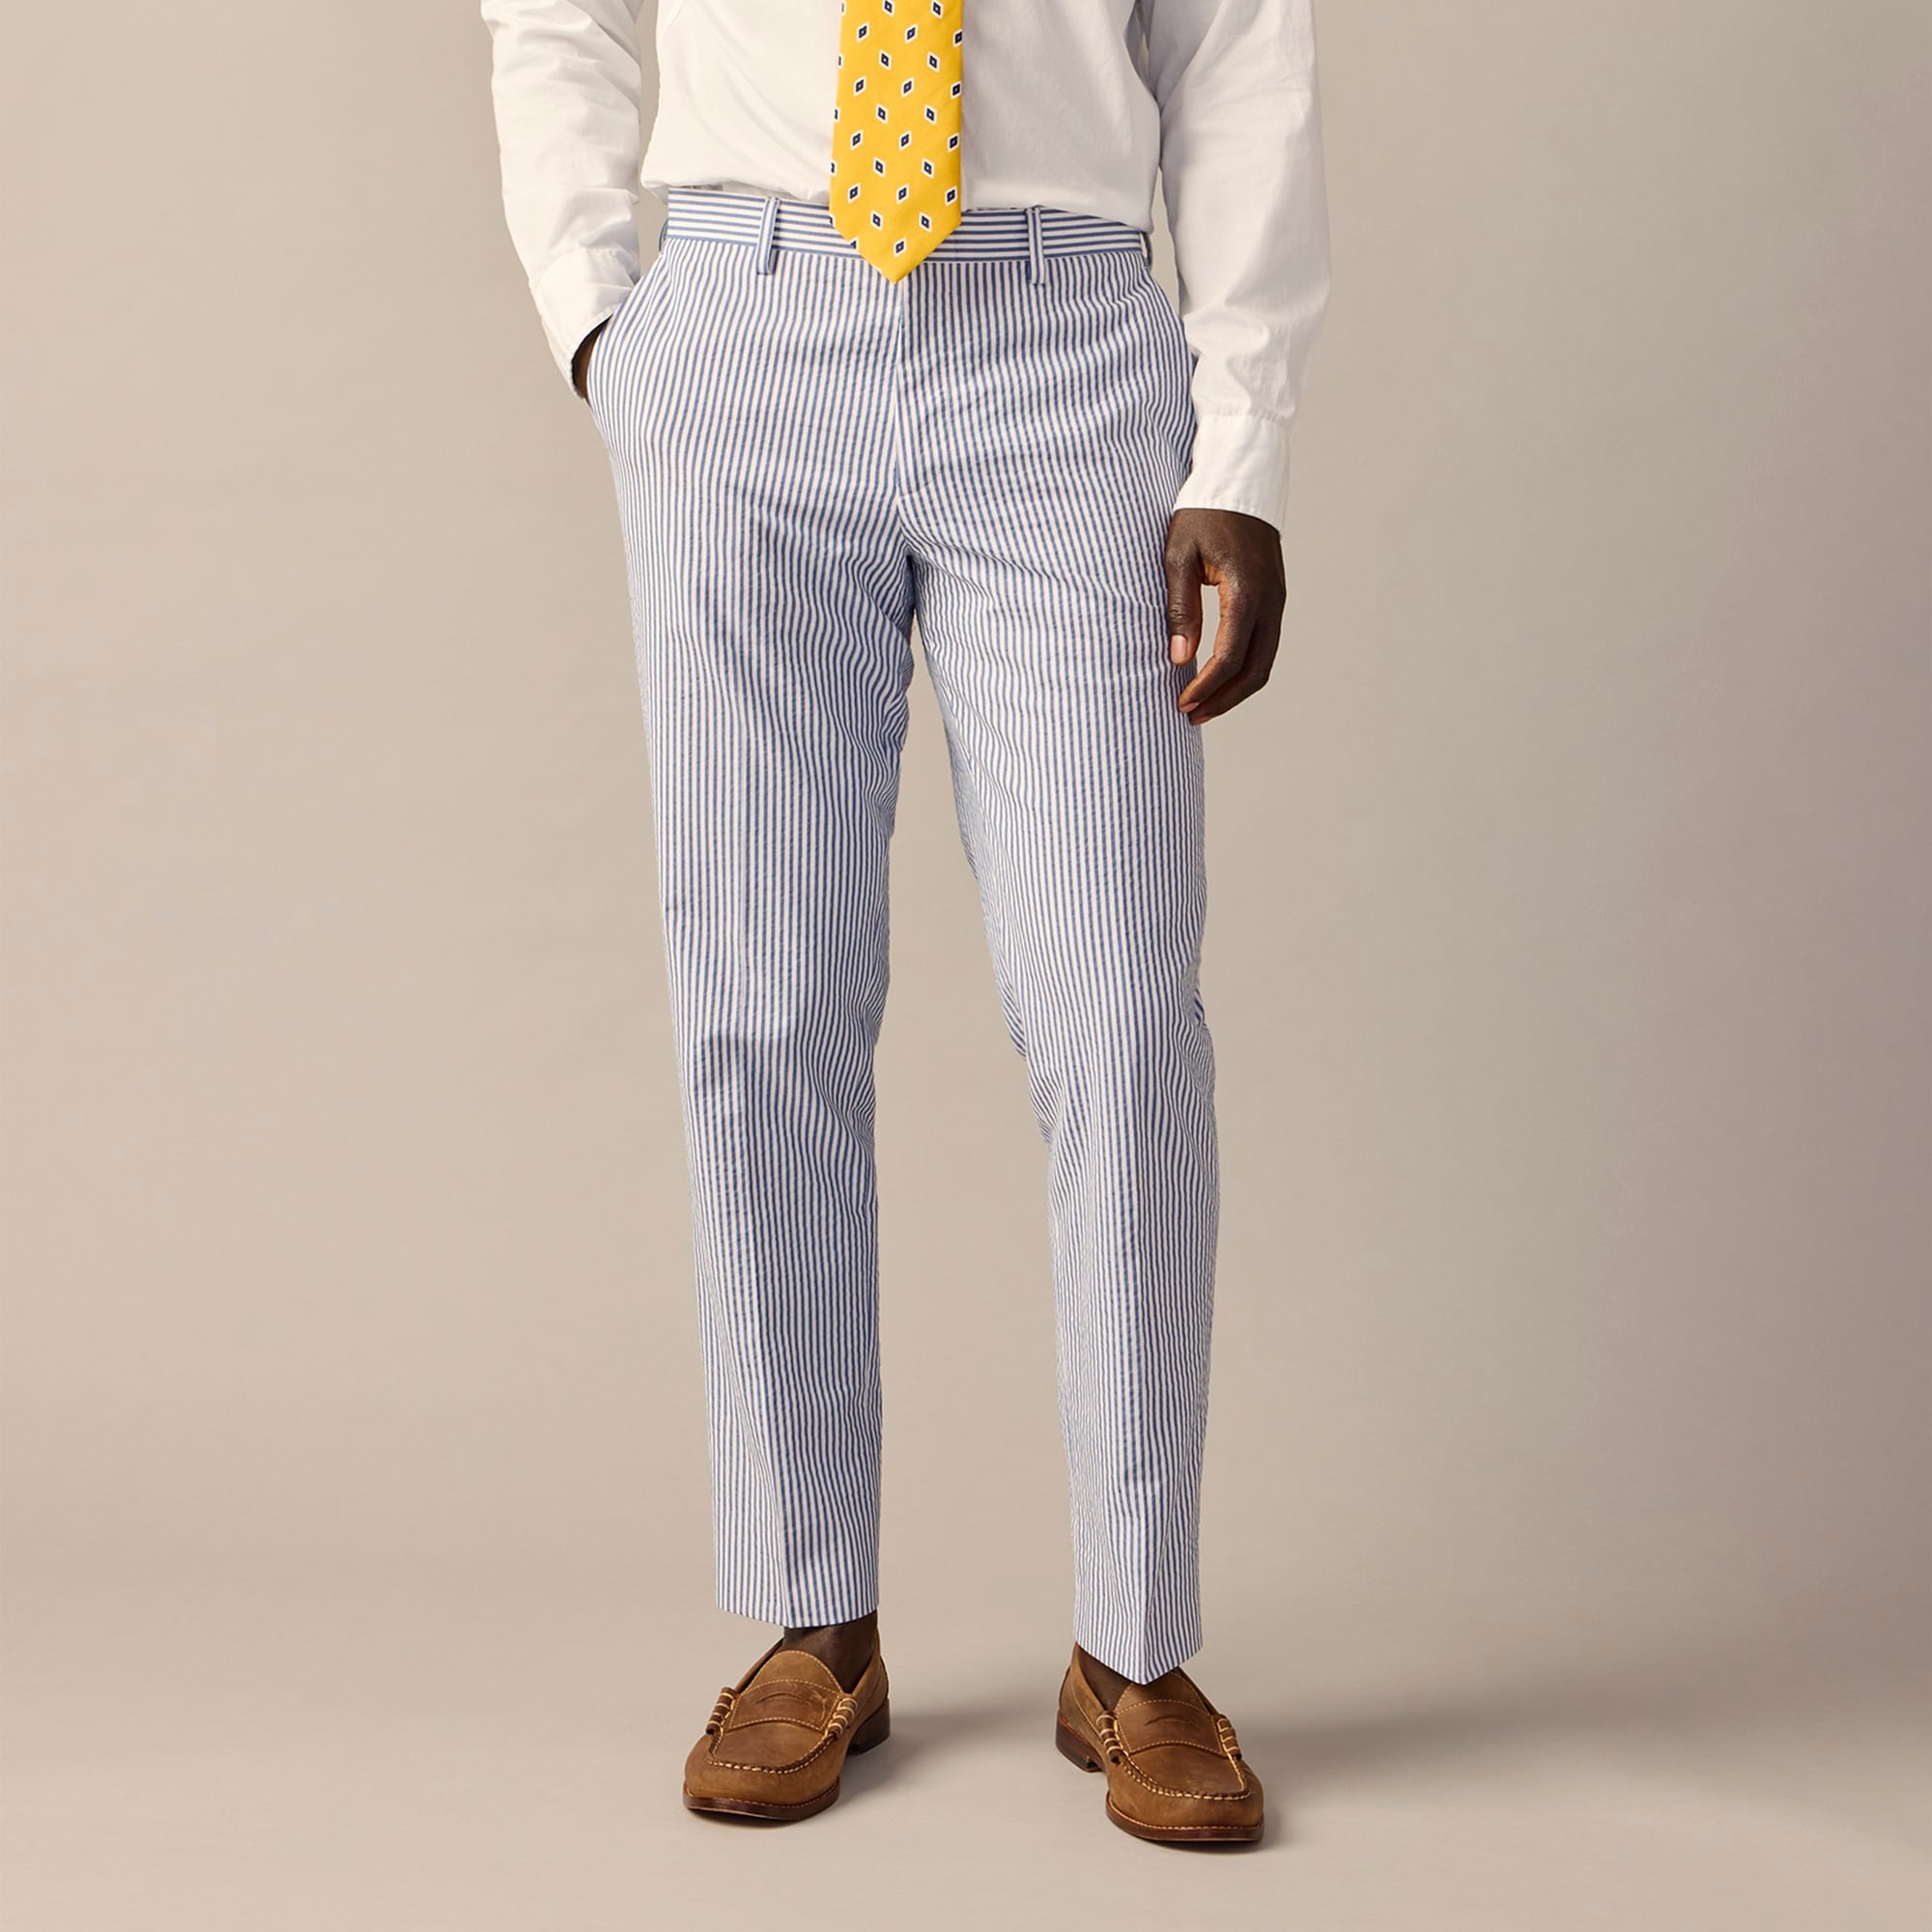  Ludlow Slim-fit unstructured suit pant in seersucker